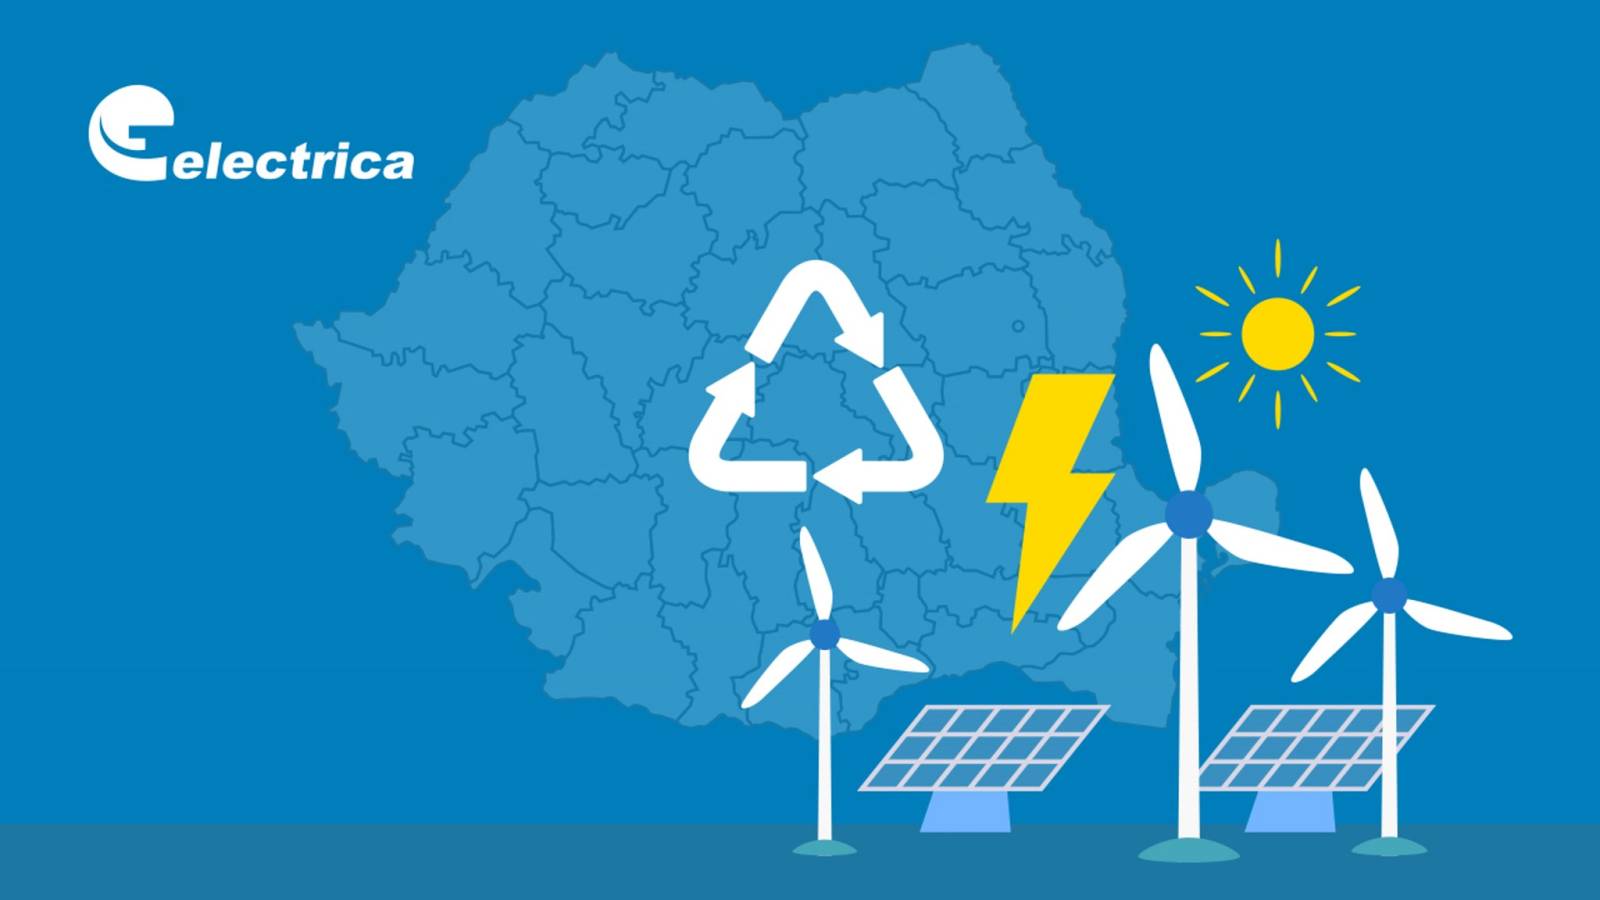 Officiële verboden van Electrica WAARSCHUWING Alle Roemeense klanten